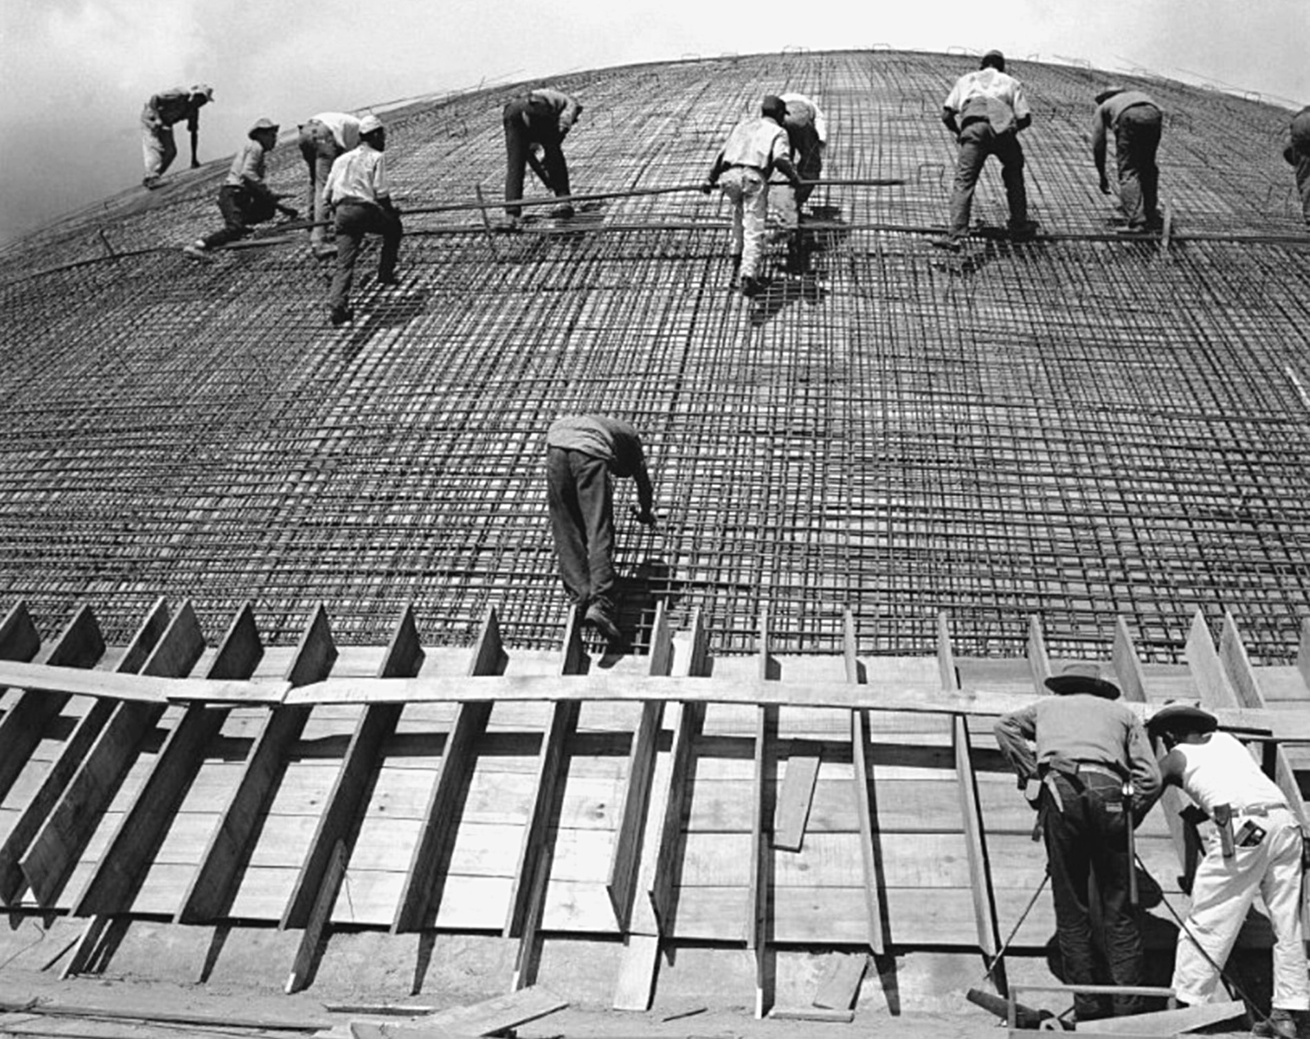 Fotografia em preto e branco. Operários trabalhando em uma grande construção com diversas vigas de ferro entrelaçadas.